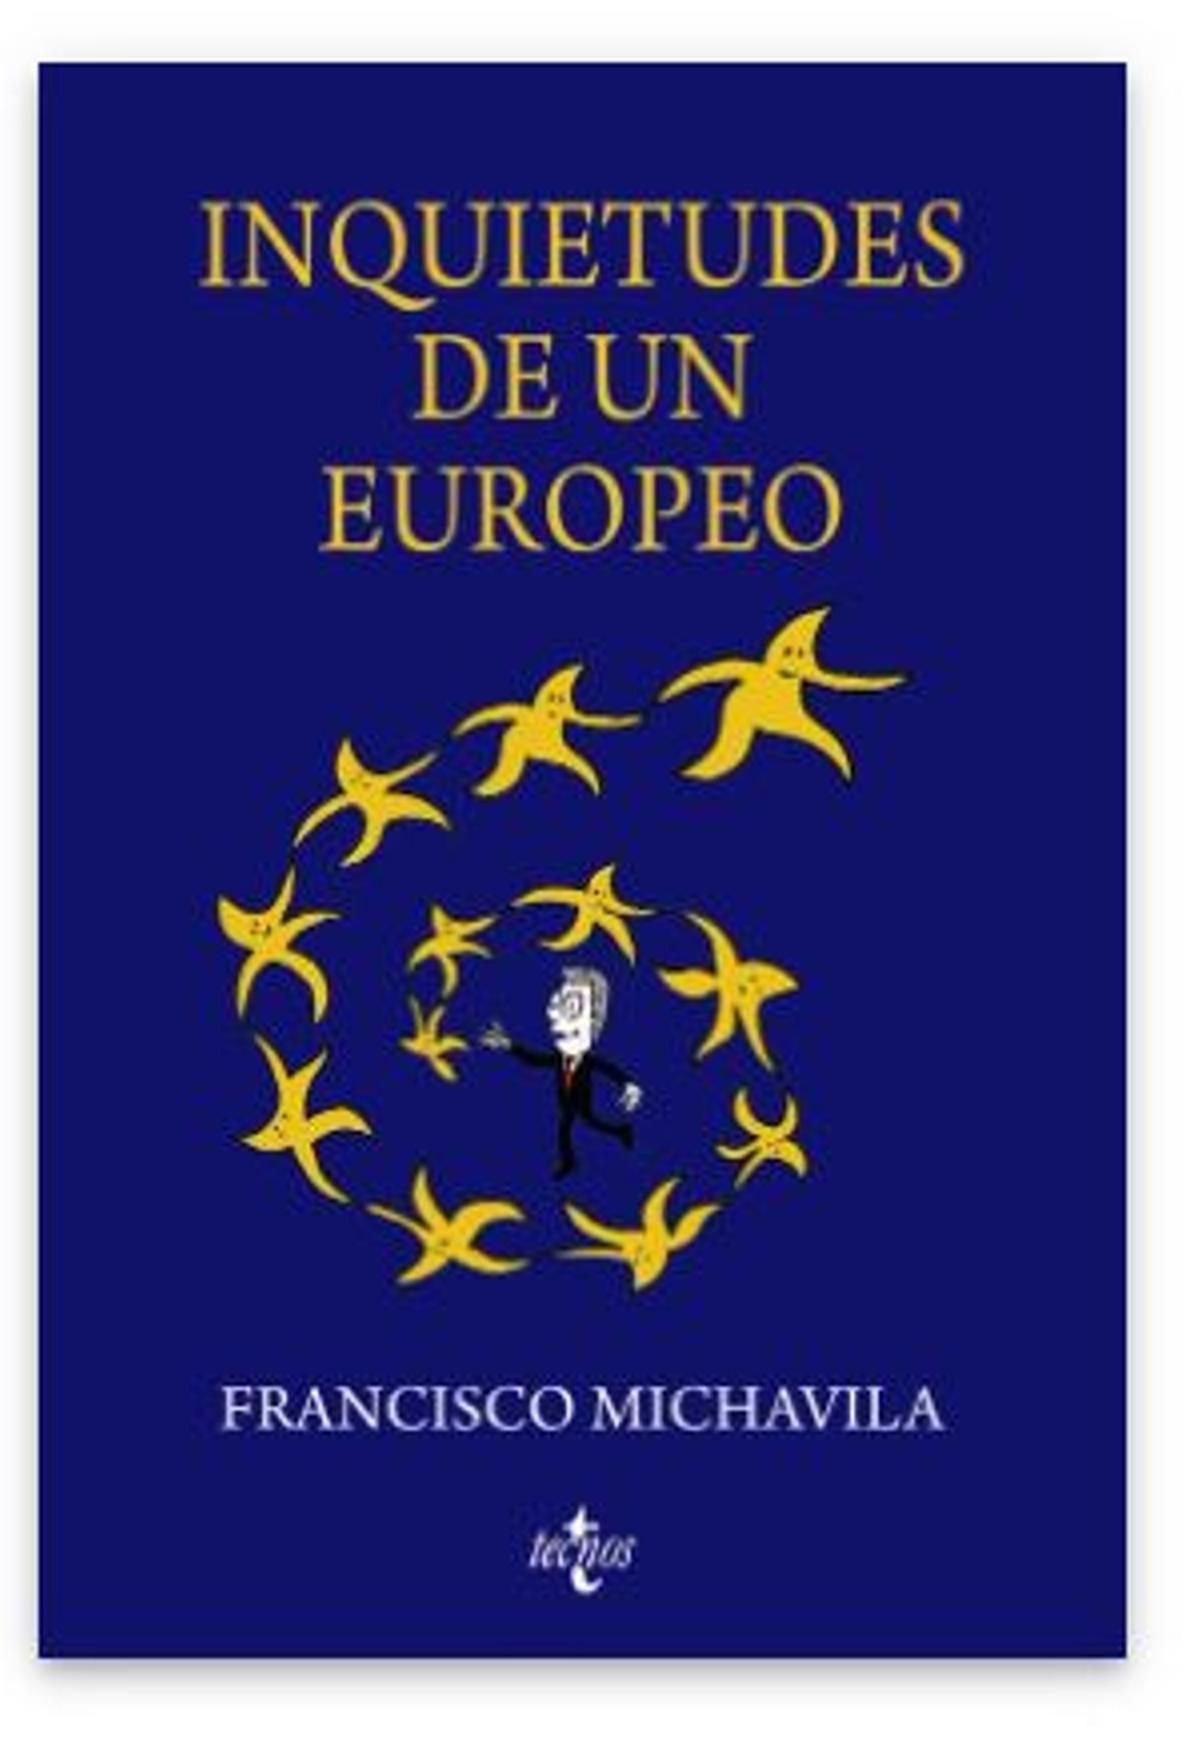 La portada del libro es una ilustración del dibujante castellonense 'Xipell' (Joan Montañés).